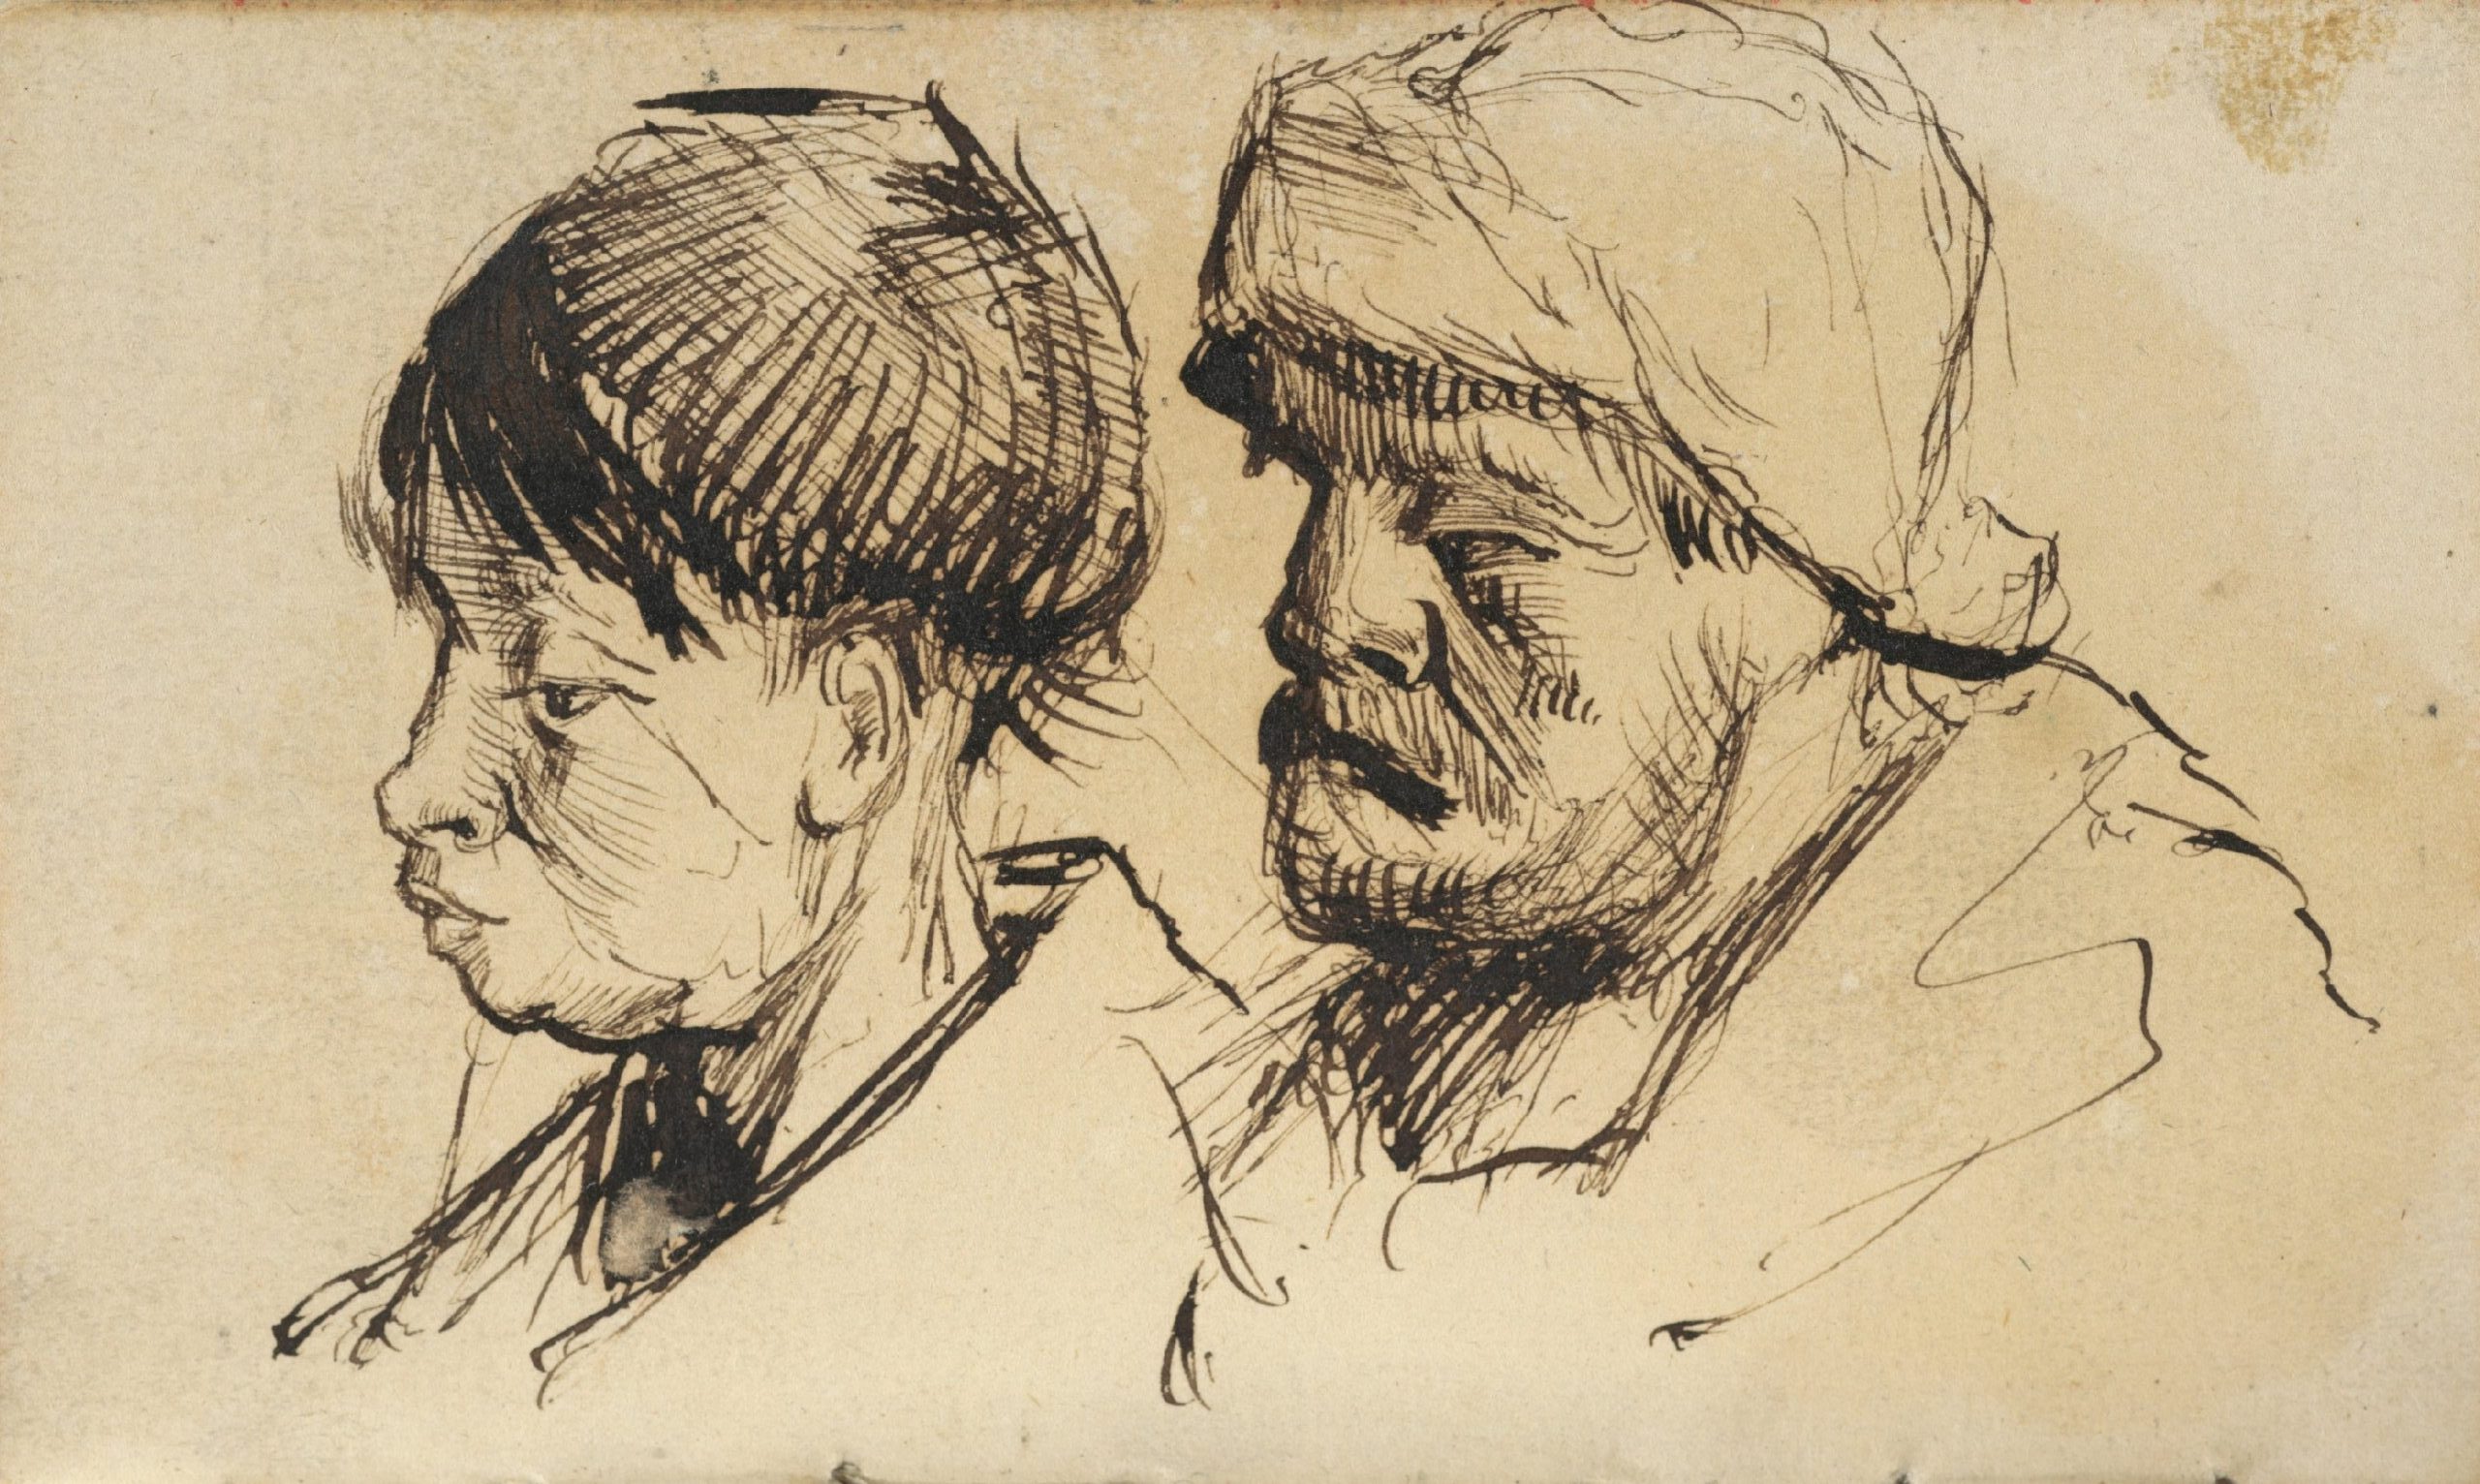 Twee koppen Vincent van Gogh (1853 - 1890), Nuenen, november 1884-september 1885